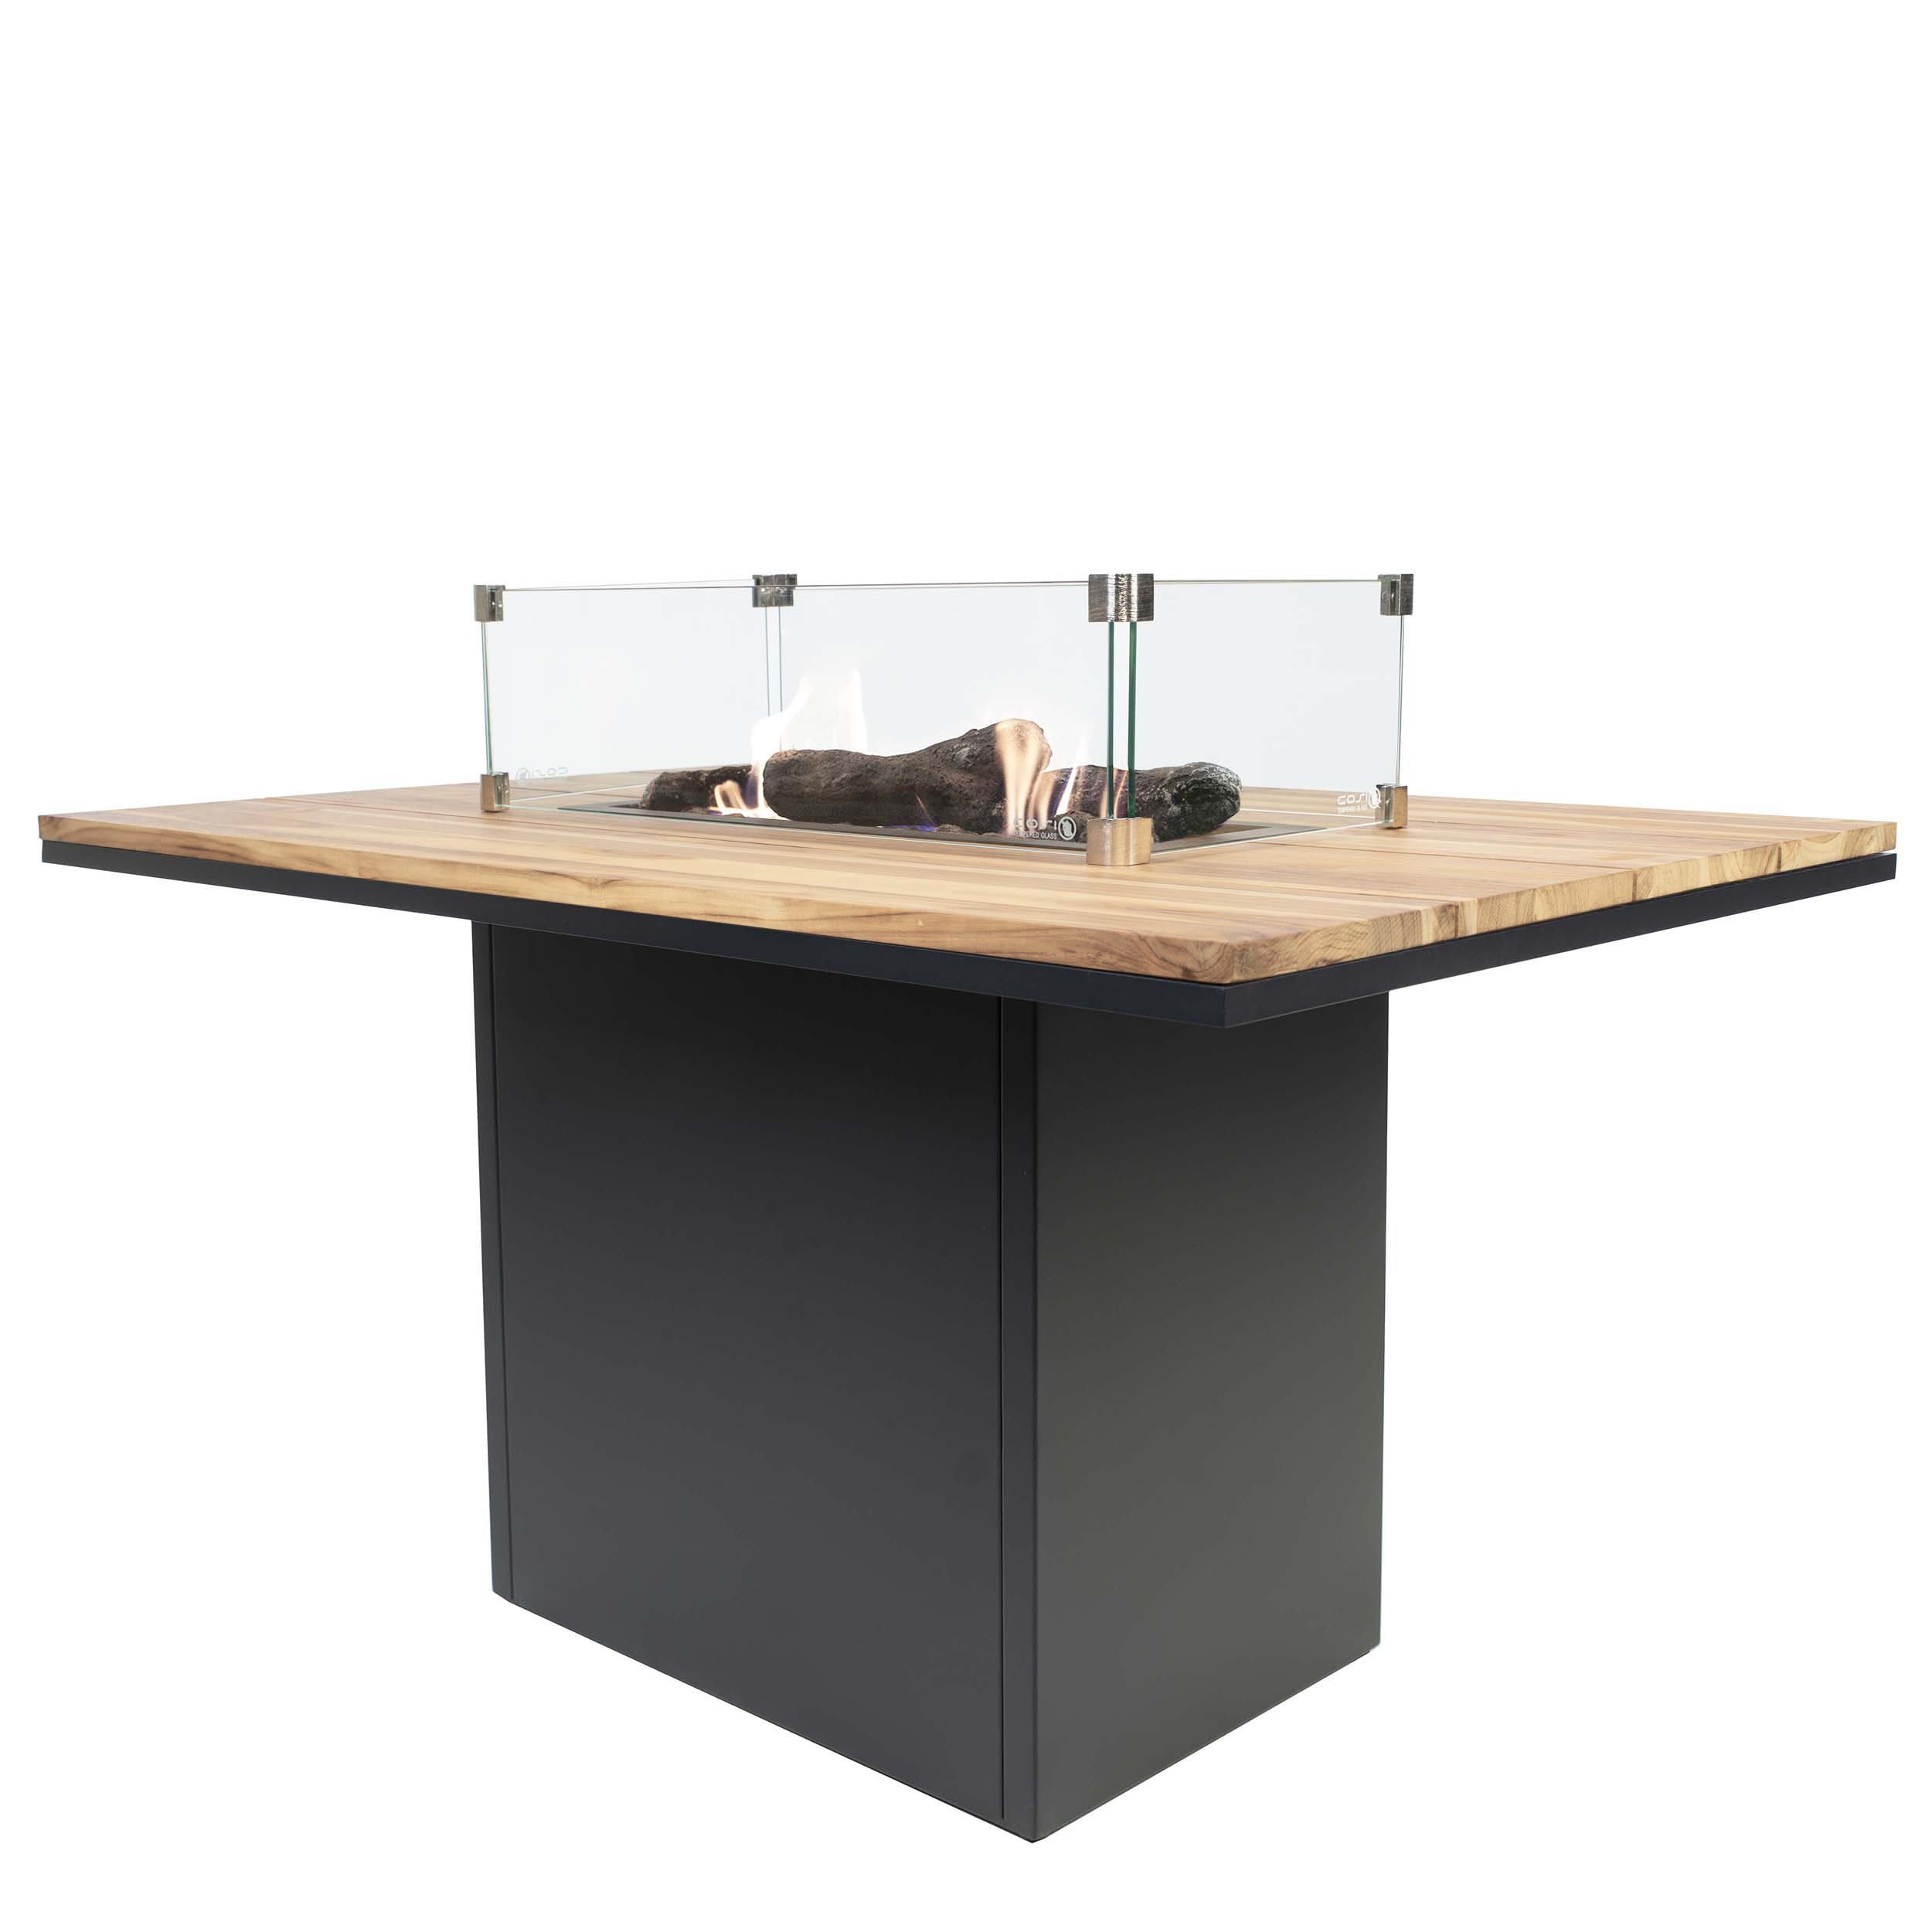 Krbový plynový stůl Cosiloft 120 vysoký jídelní stůl černý rám / deska teak (neobsahuje sklo) COSI - Domio.cz